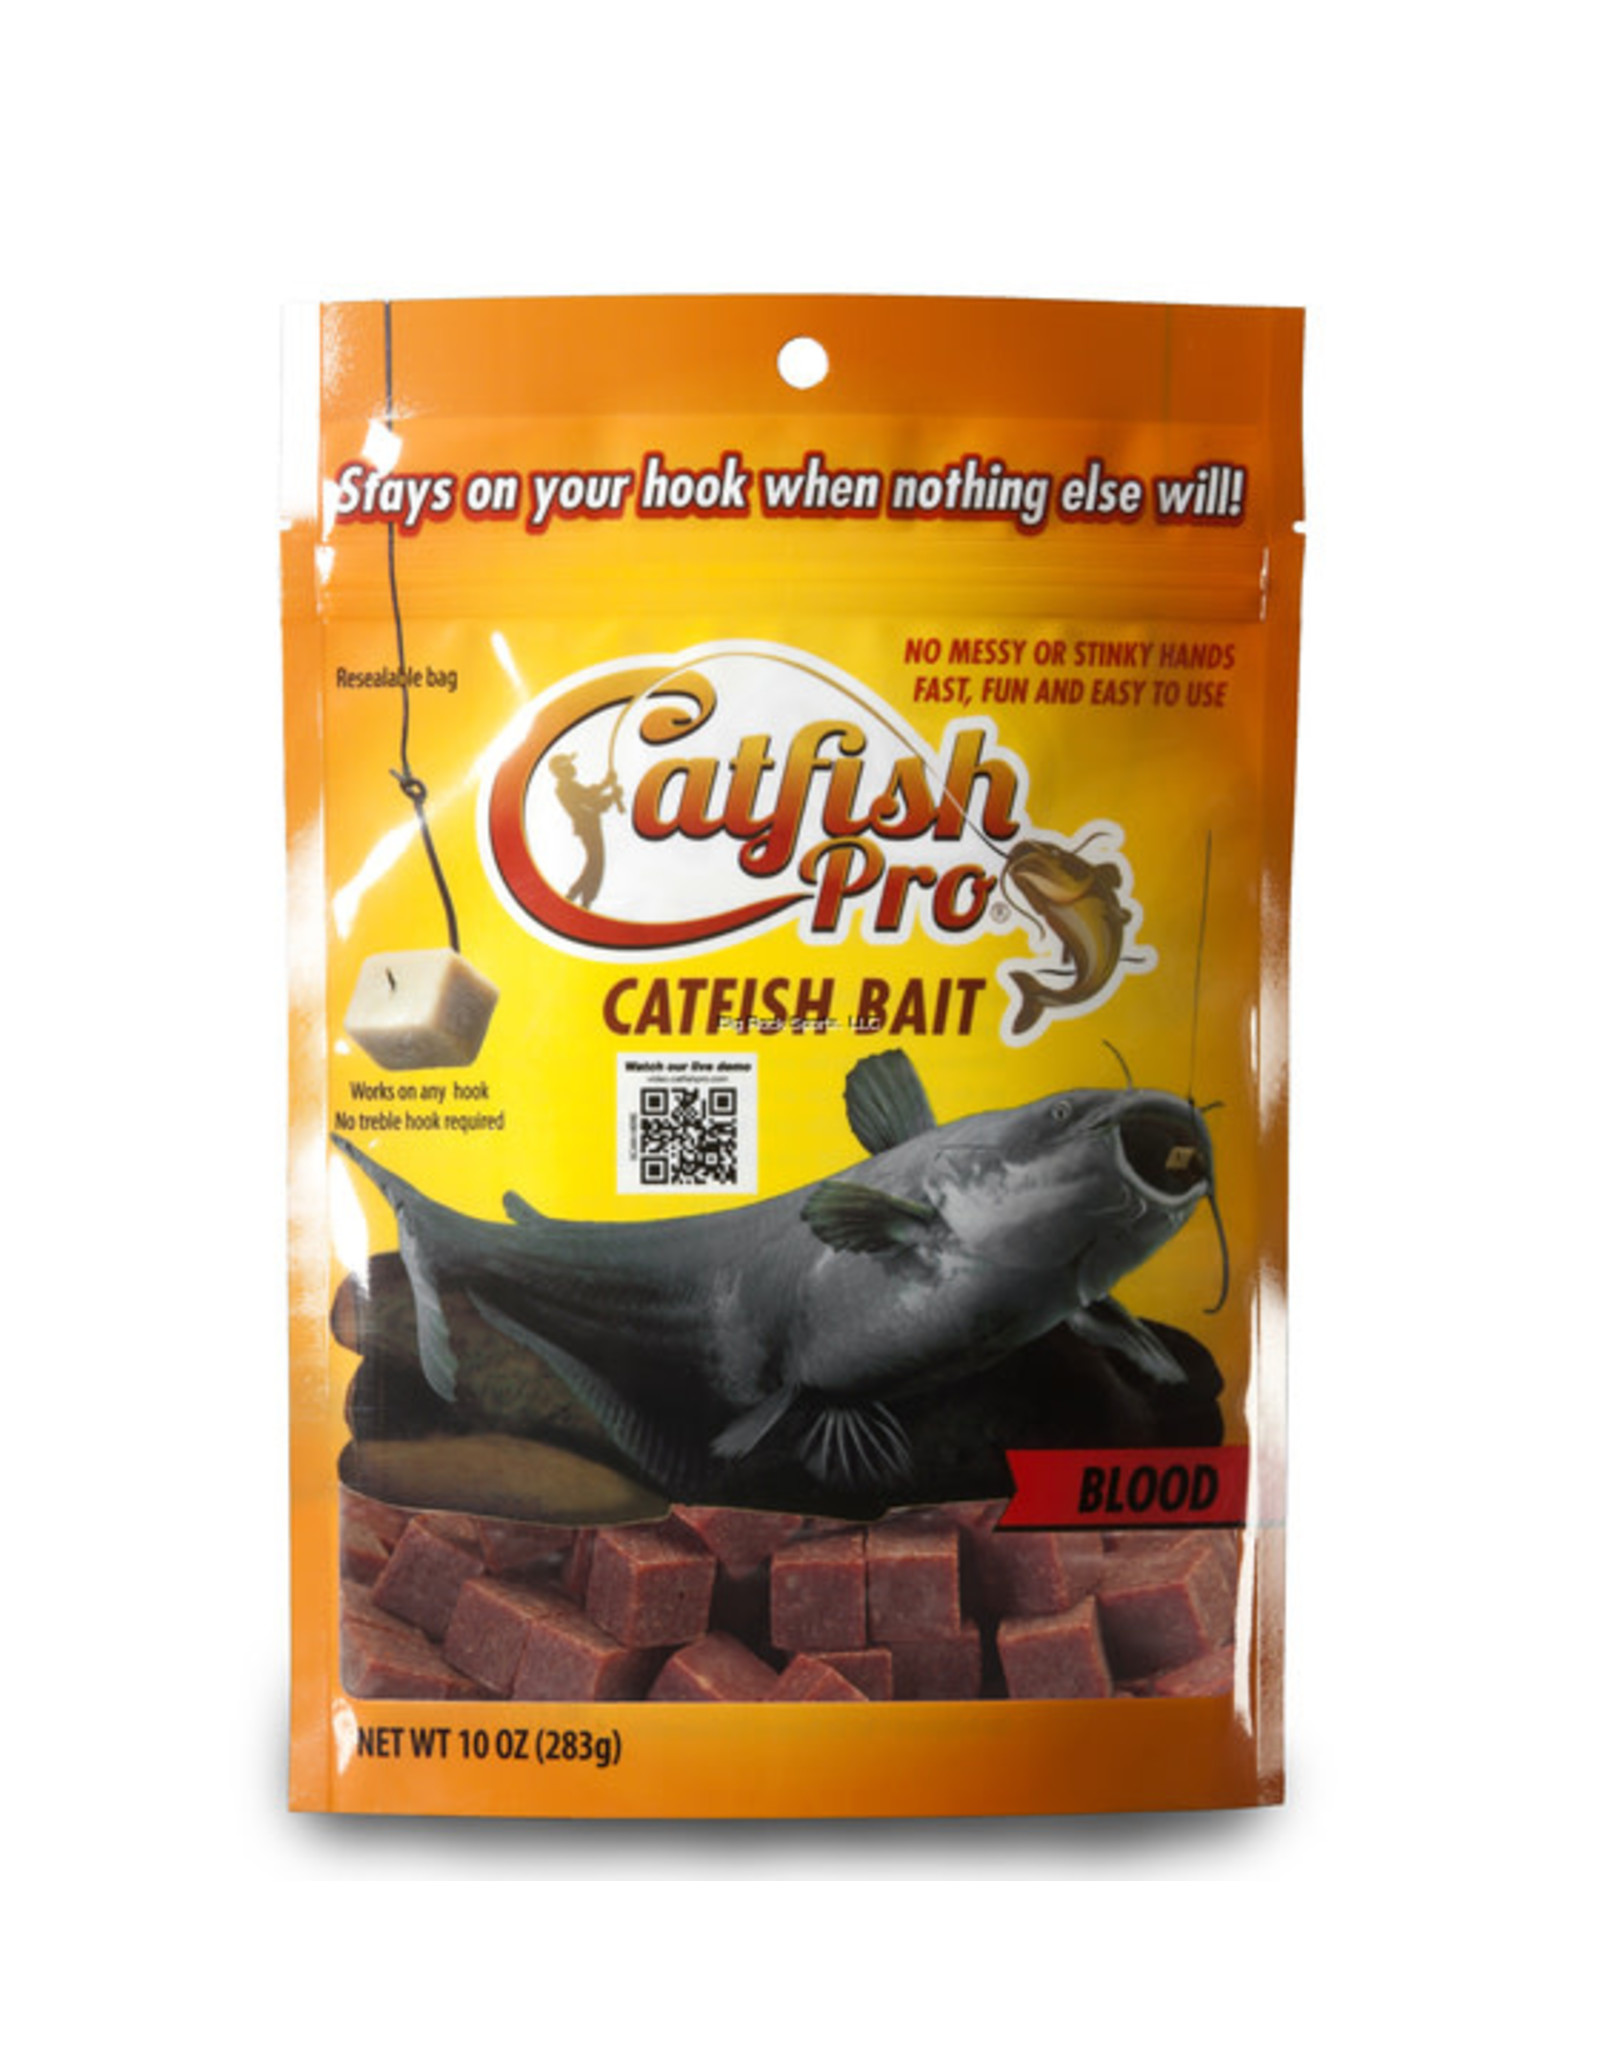 Catfish Pro 8881 Blood Catfish Bait